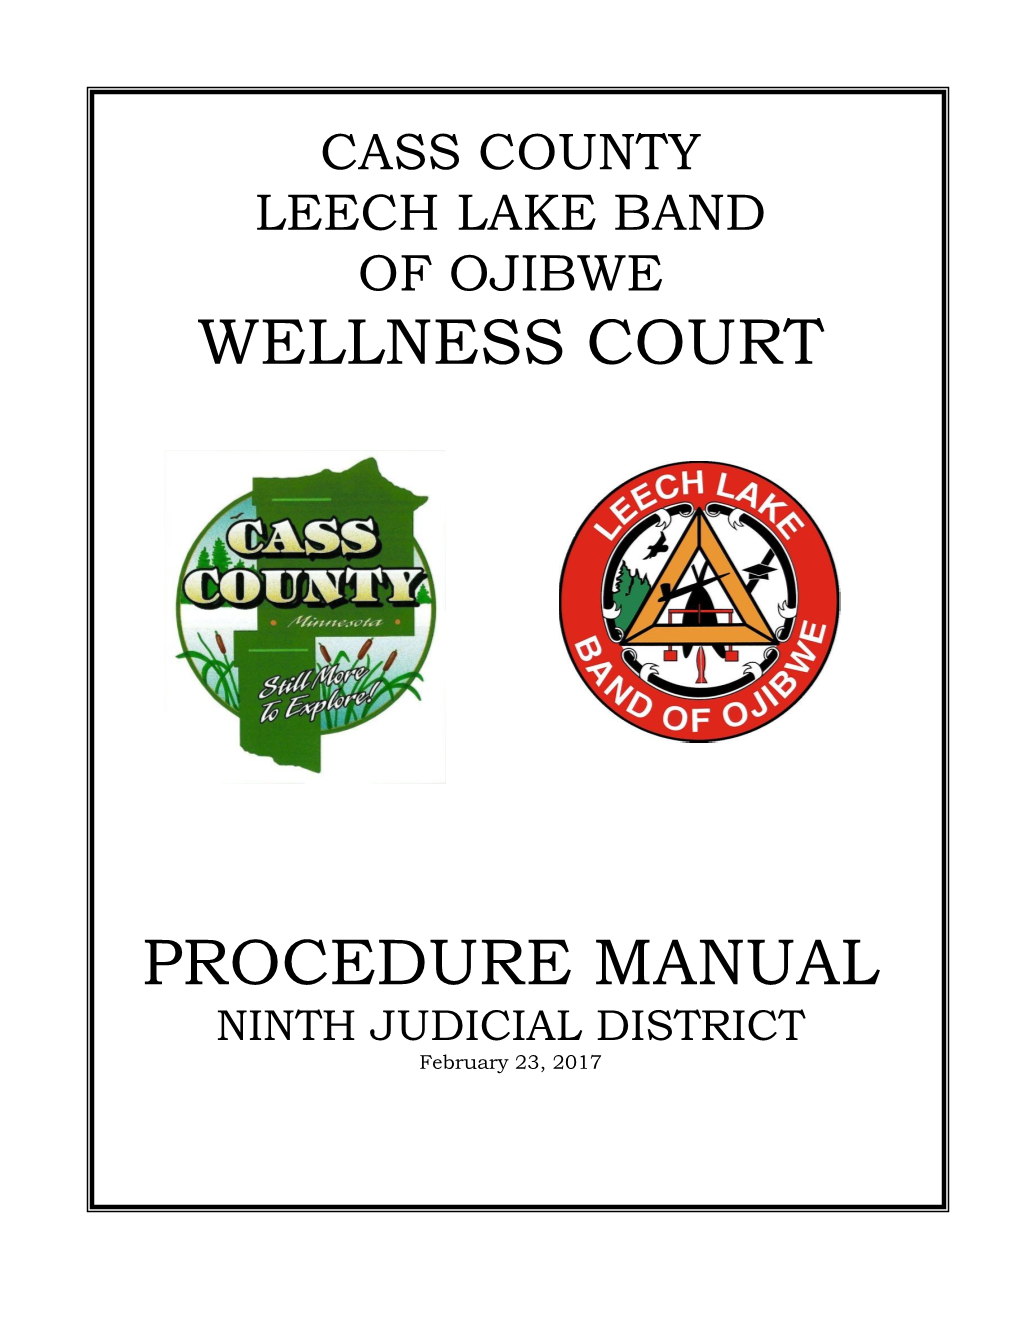 Cass County-Leech Lake Wellness Court Procedure Manual